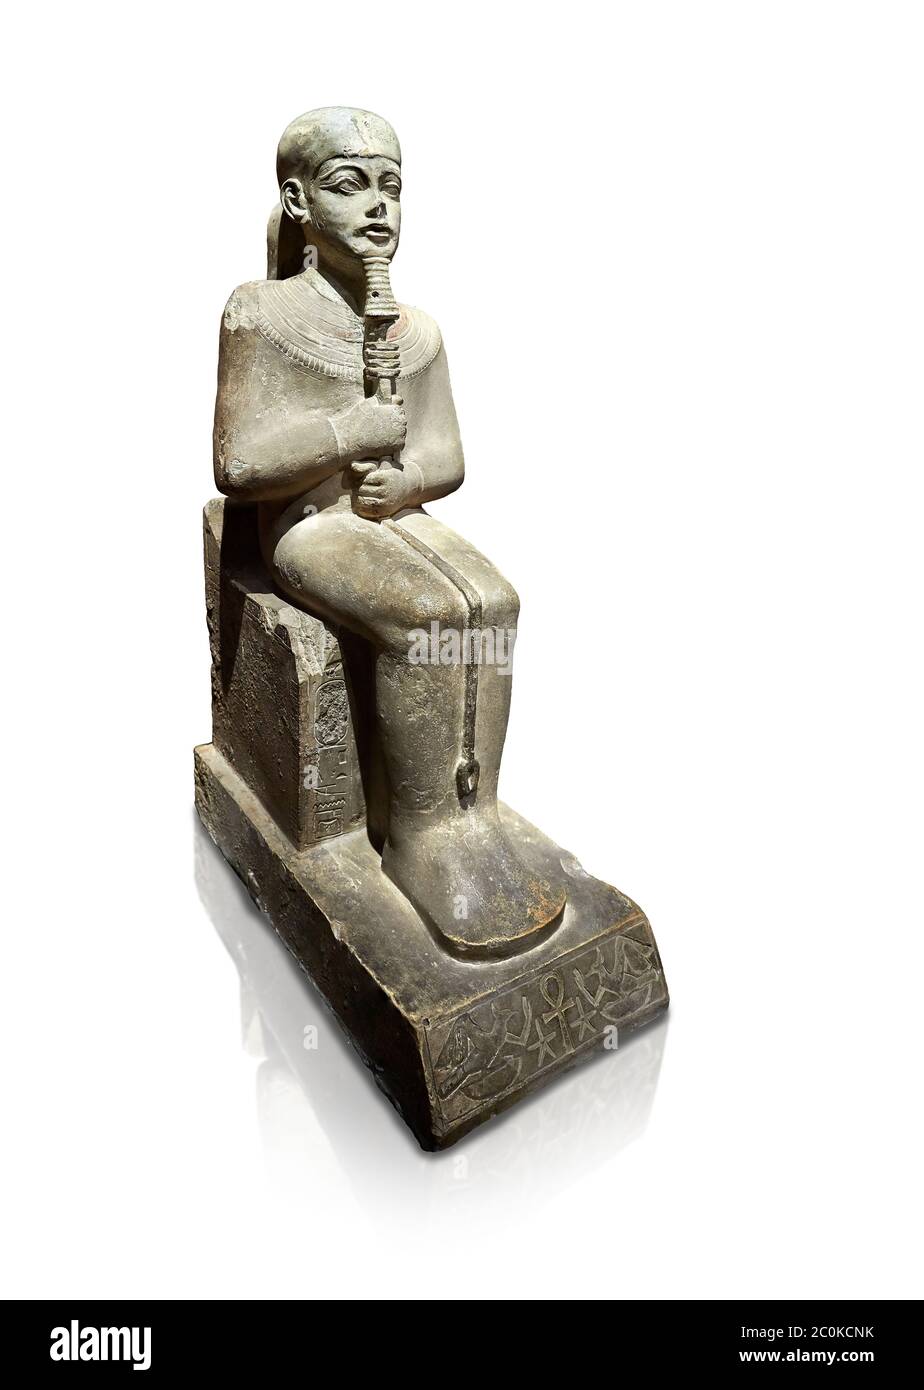 Ancienne statue égyptienne de Ptah - calcaire - Nouveau Royaume. 18e dynastie, règne d'Amenhotep III (1390 - 1353 av. J.-C.), Karnac. Musée égyptien, Turin. whi Banque D'Images